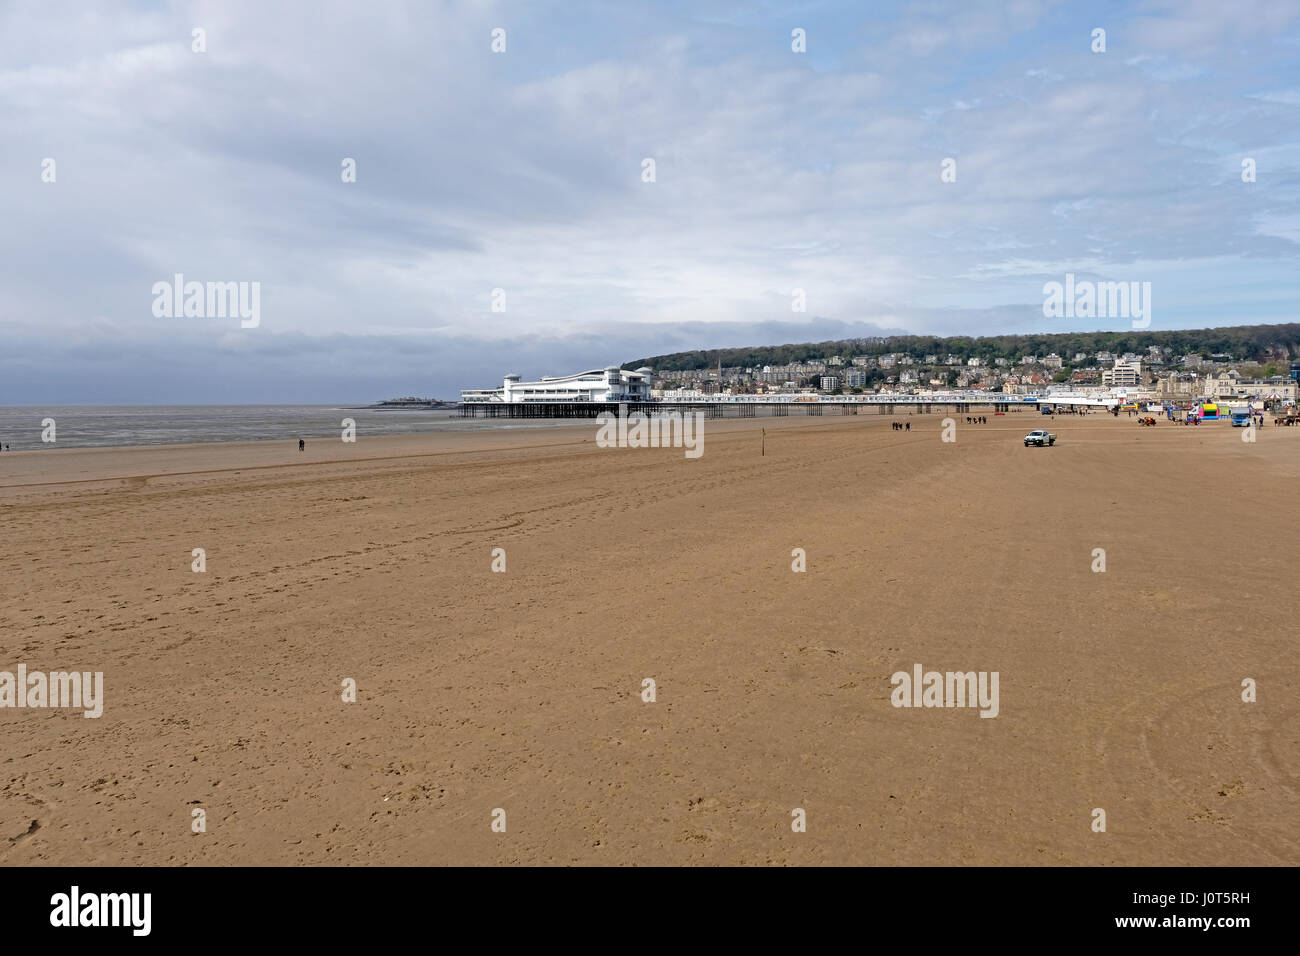 Weston-super-Mare, Royaume-Uni. 16 avril, 2017. Météo France : La plage est quasi déserte sous un ciel couvert, froid, venteux et dimanche de Pâques. Keith Ramsey/Alamy Live News Banque D'Images